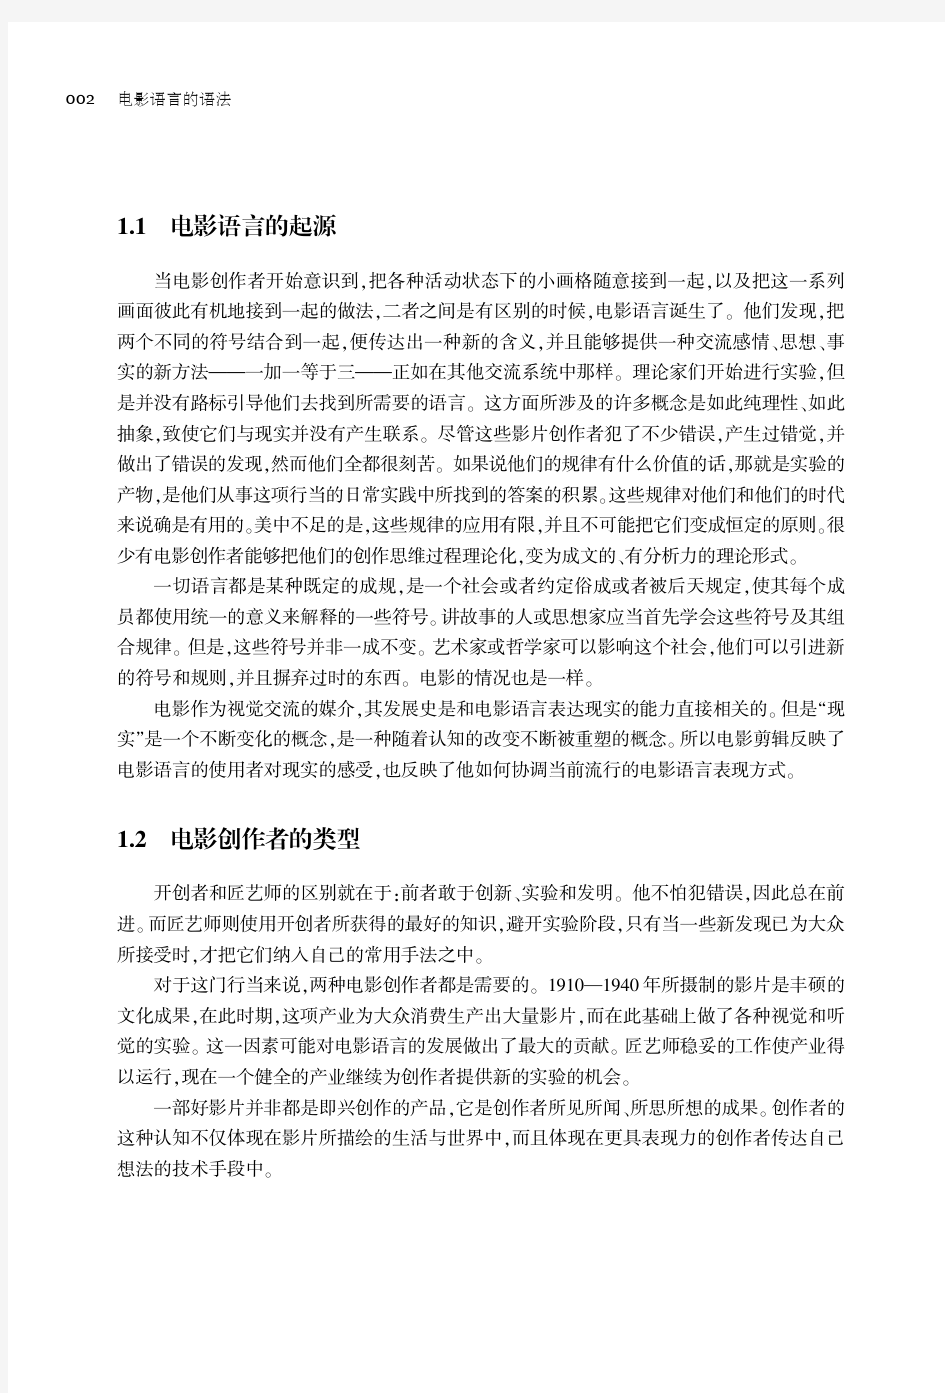 后浪电影学院037《电影语言的语法》北京电影学院三十年来指定必读书目